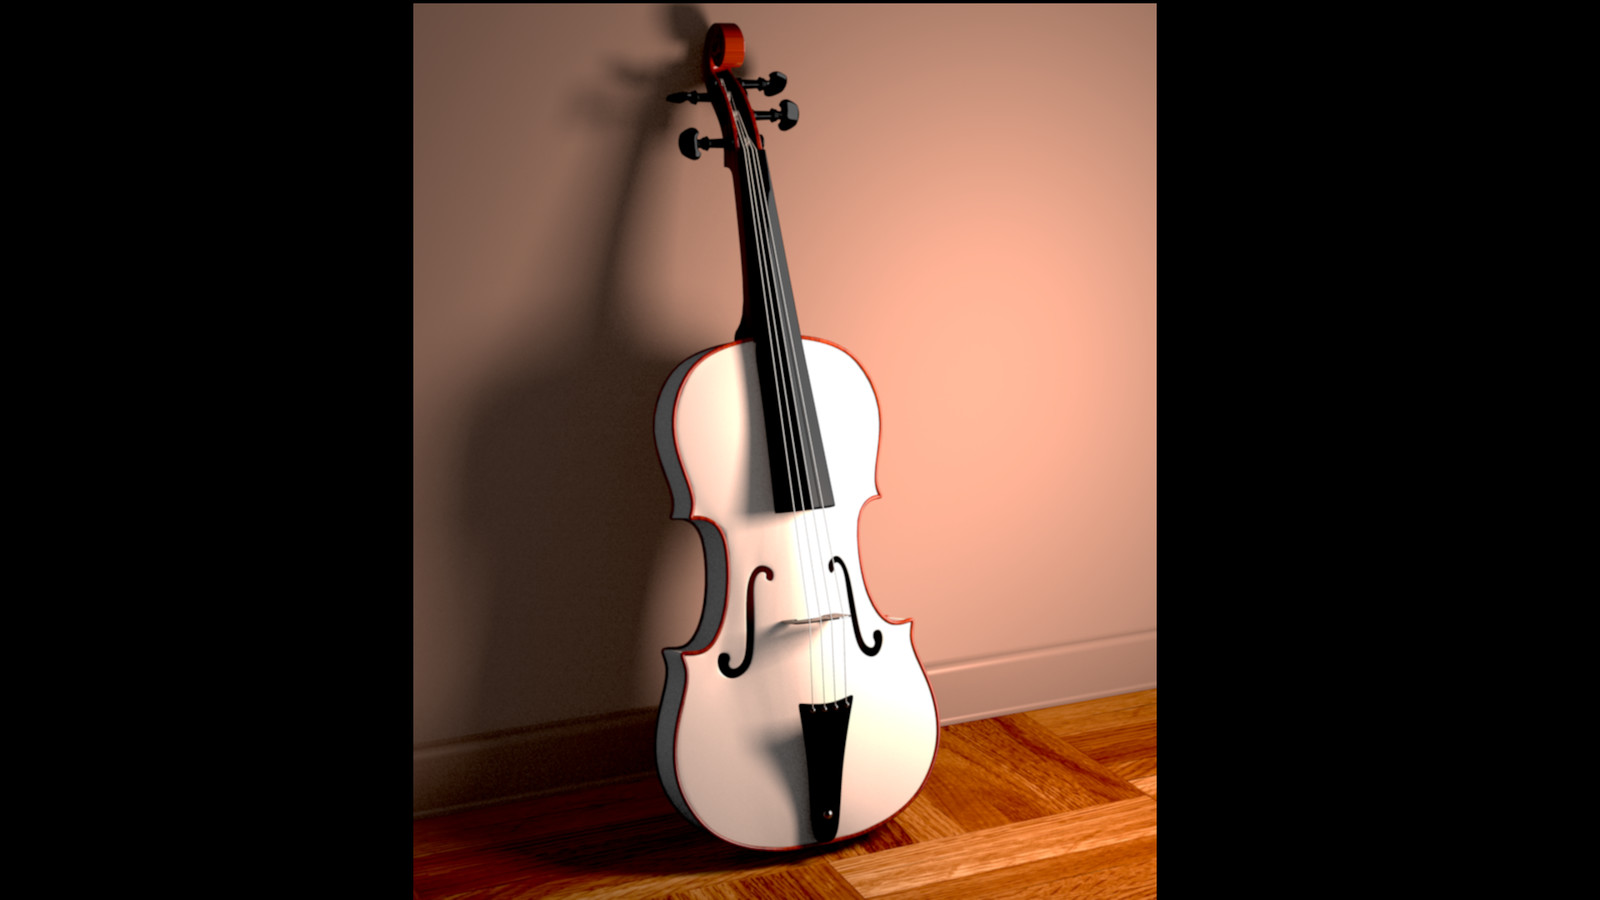 Efim Stepanov Violin 3d Model